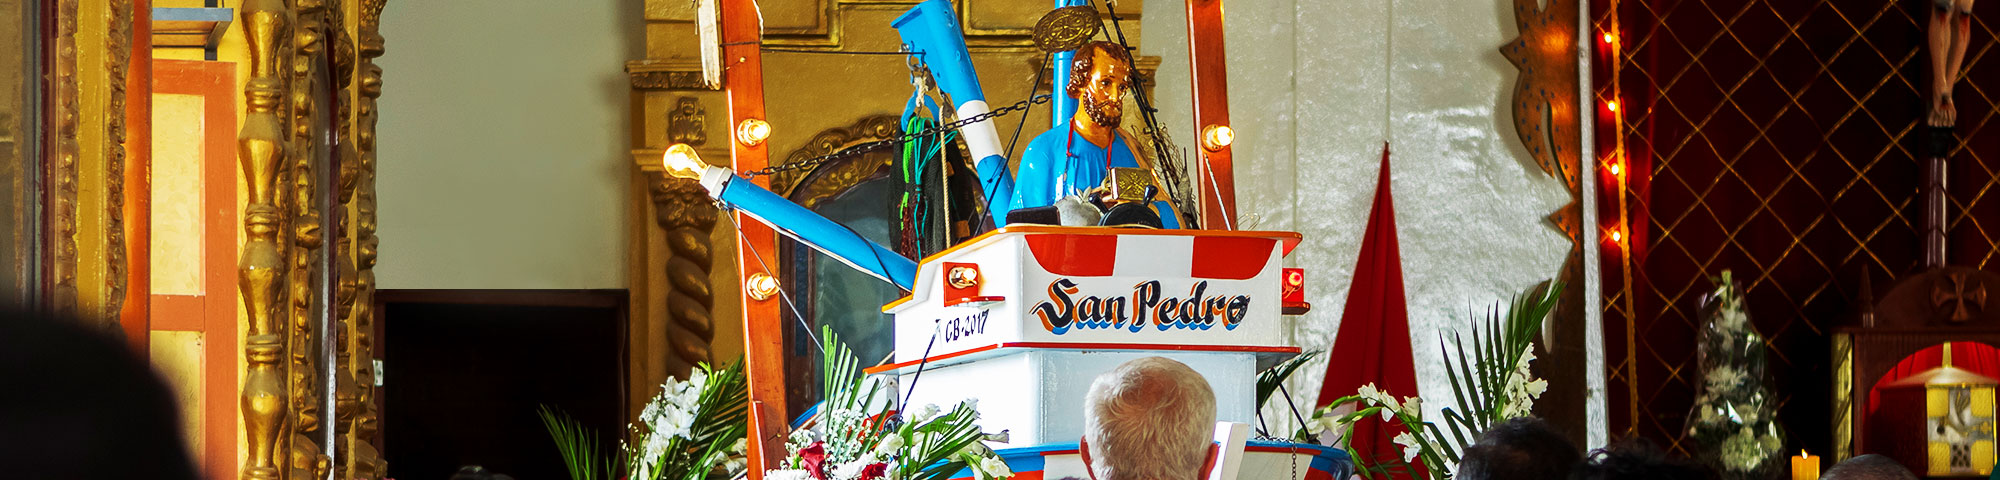 ¡Celebremos el Día de San Pedro y San Pablo con tradiciones peruanas!